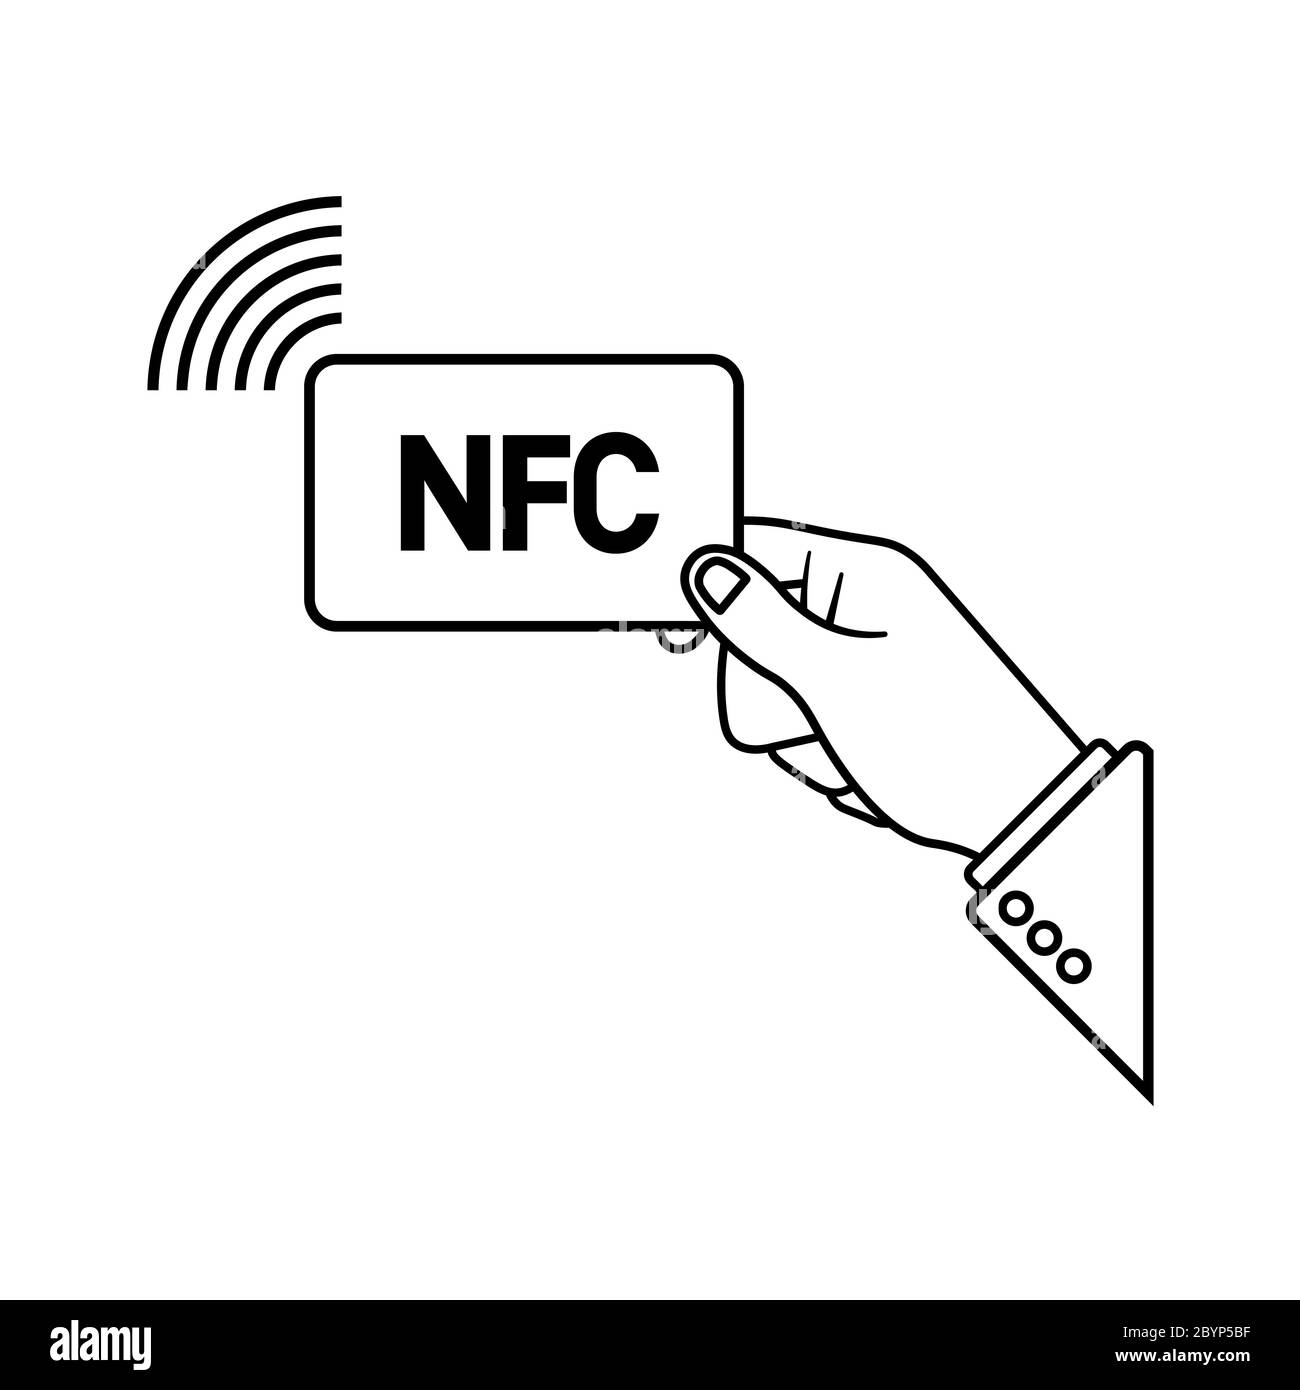 Метка для оплаты. Значок NFC. Оплата NFC иконка. Значок NFC на карте. NFC метка значок.